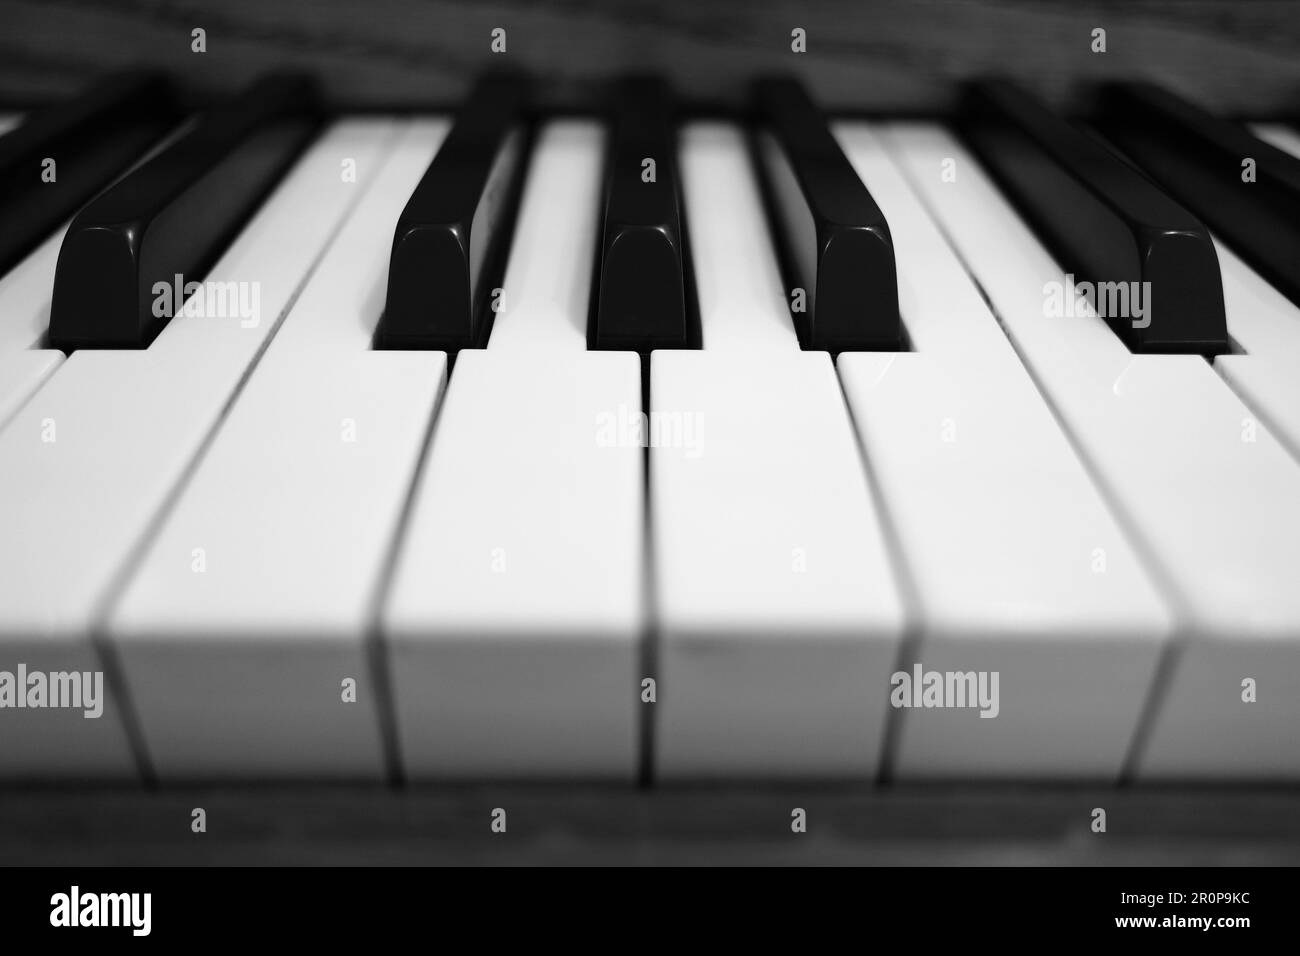 Antichi tasti piano texture di bianco e nero dettagli per musica atristica Foto Stock